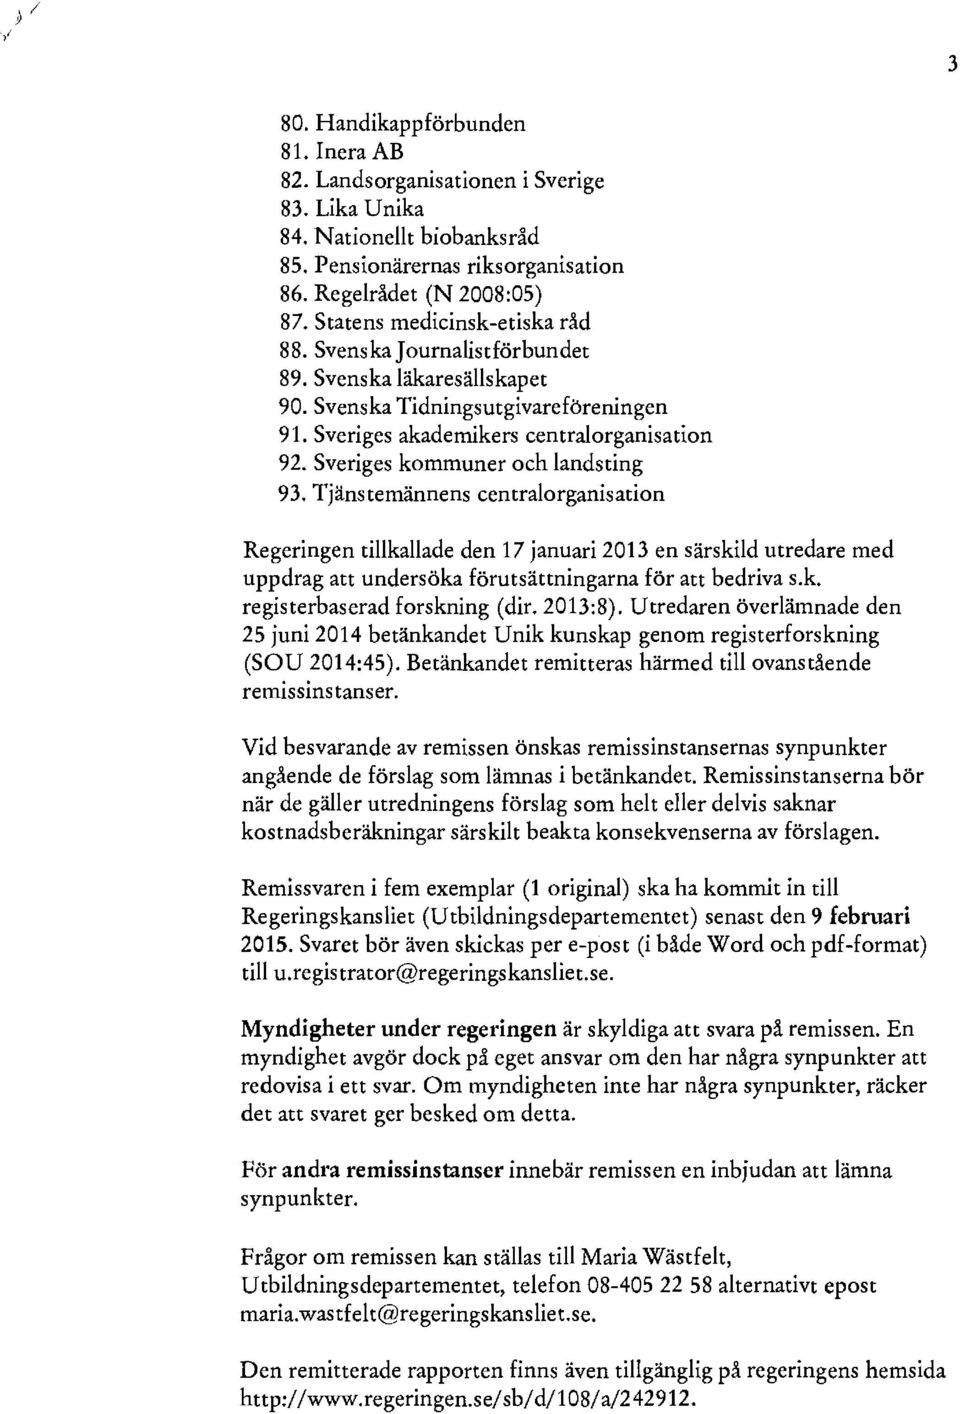 Sveriges kommuner och landsting 93. Tjänstemännens centralorganisation Regeringen tillkallade den 17 januari 2013 en särskild utredare med uppdrag att undersöka förutsättningarna för att bedriva s.k. registerbaserad forskning (dir.